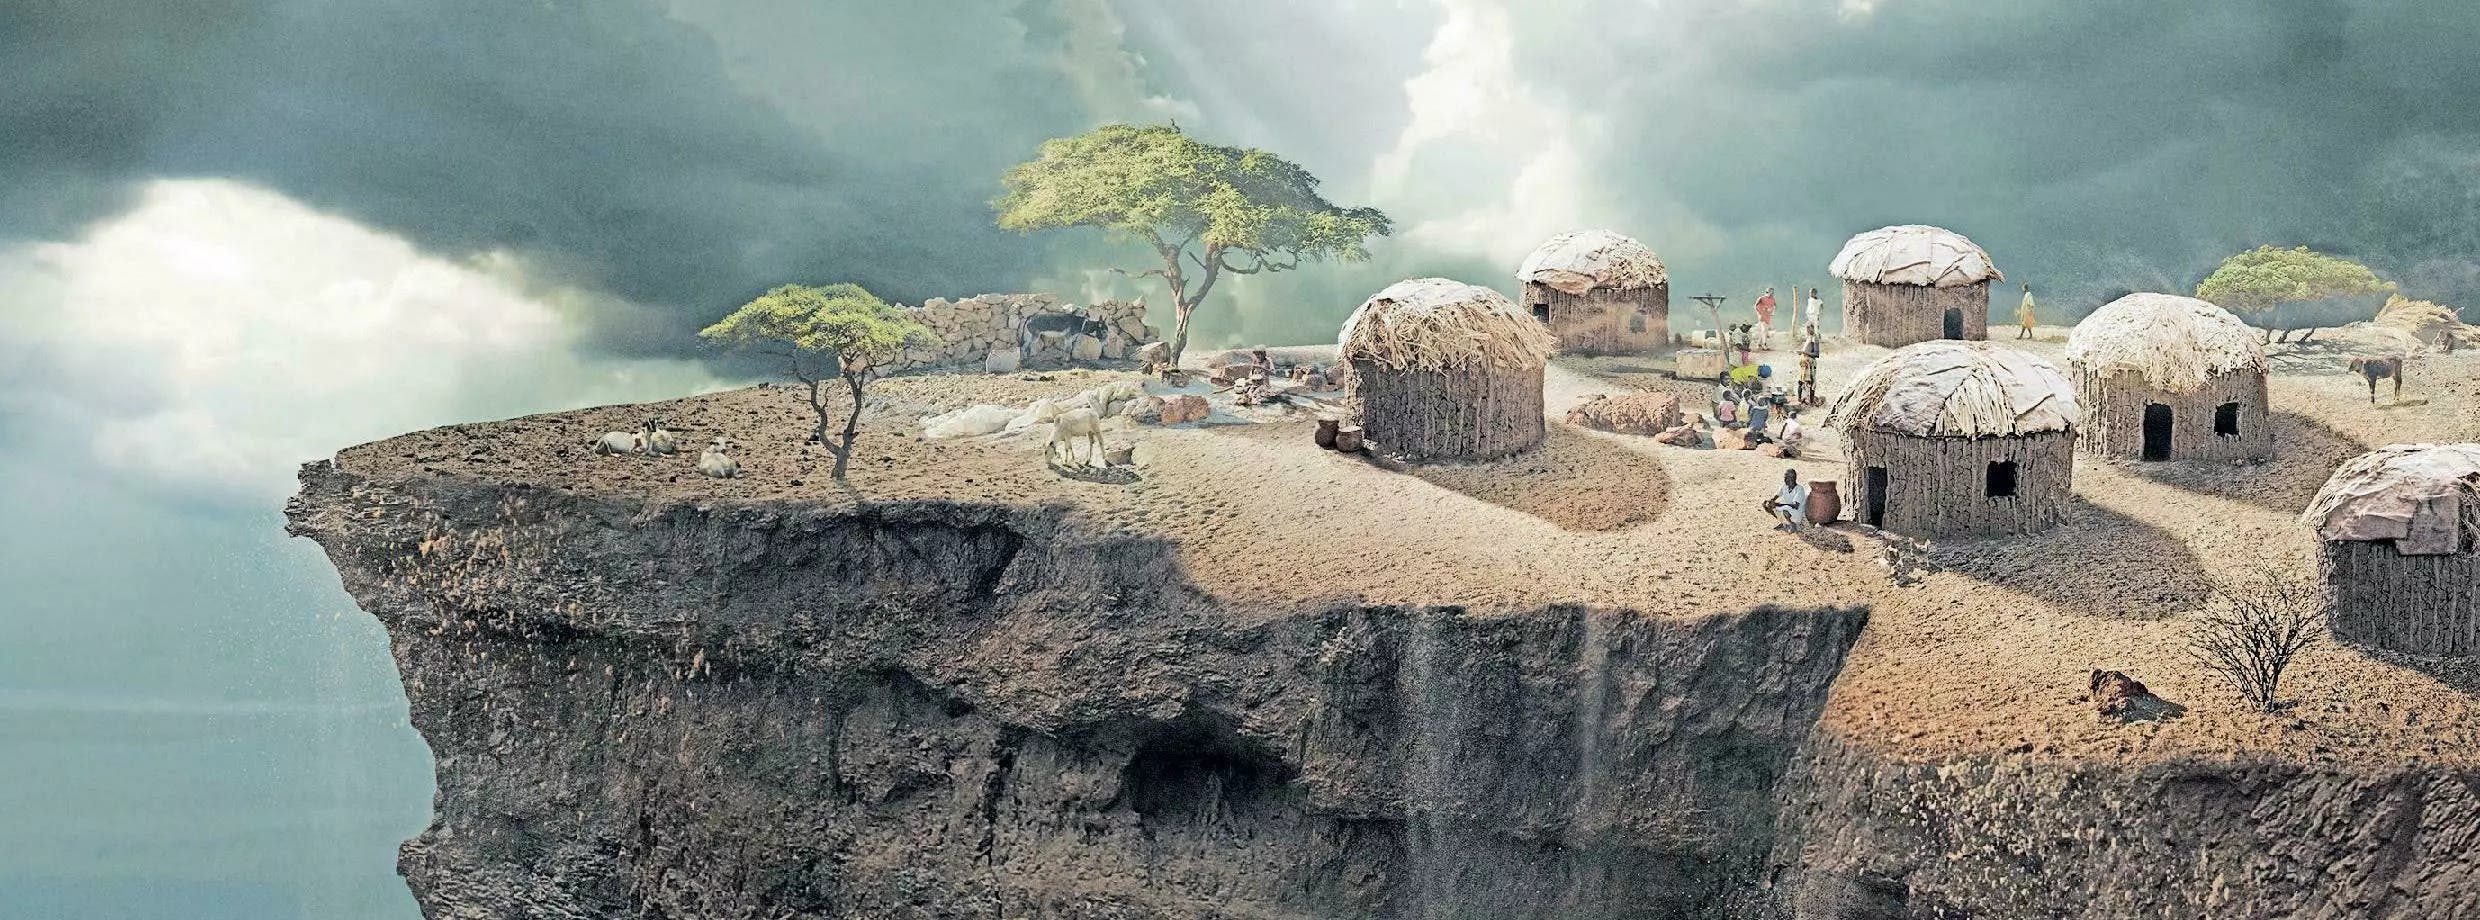 Ein Symbolbild aus ein Werbekampagne von FAIRMED. Darauf ist ein kleines Dorf aus Strohhütten zu sehen, welches extrem abgelegen liegt.